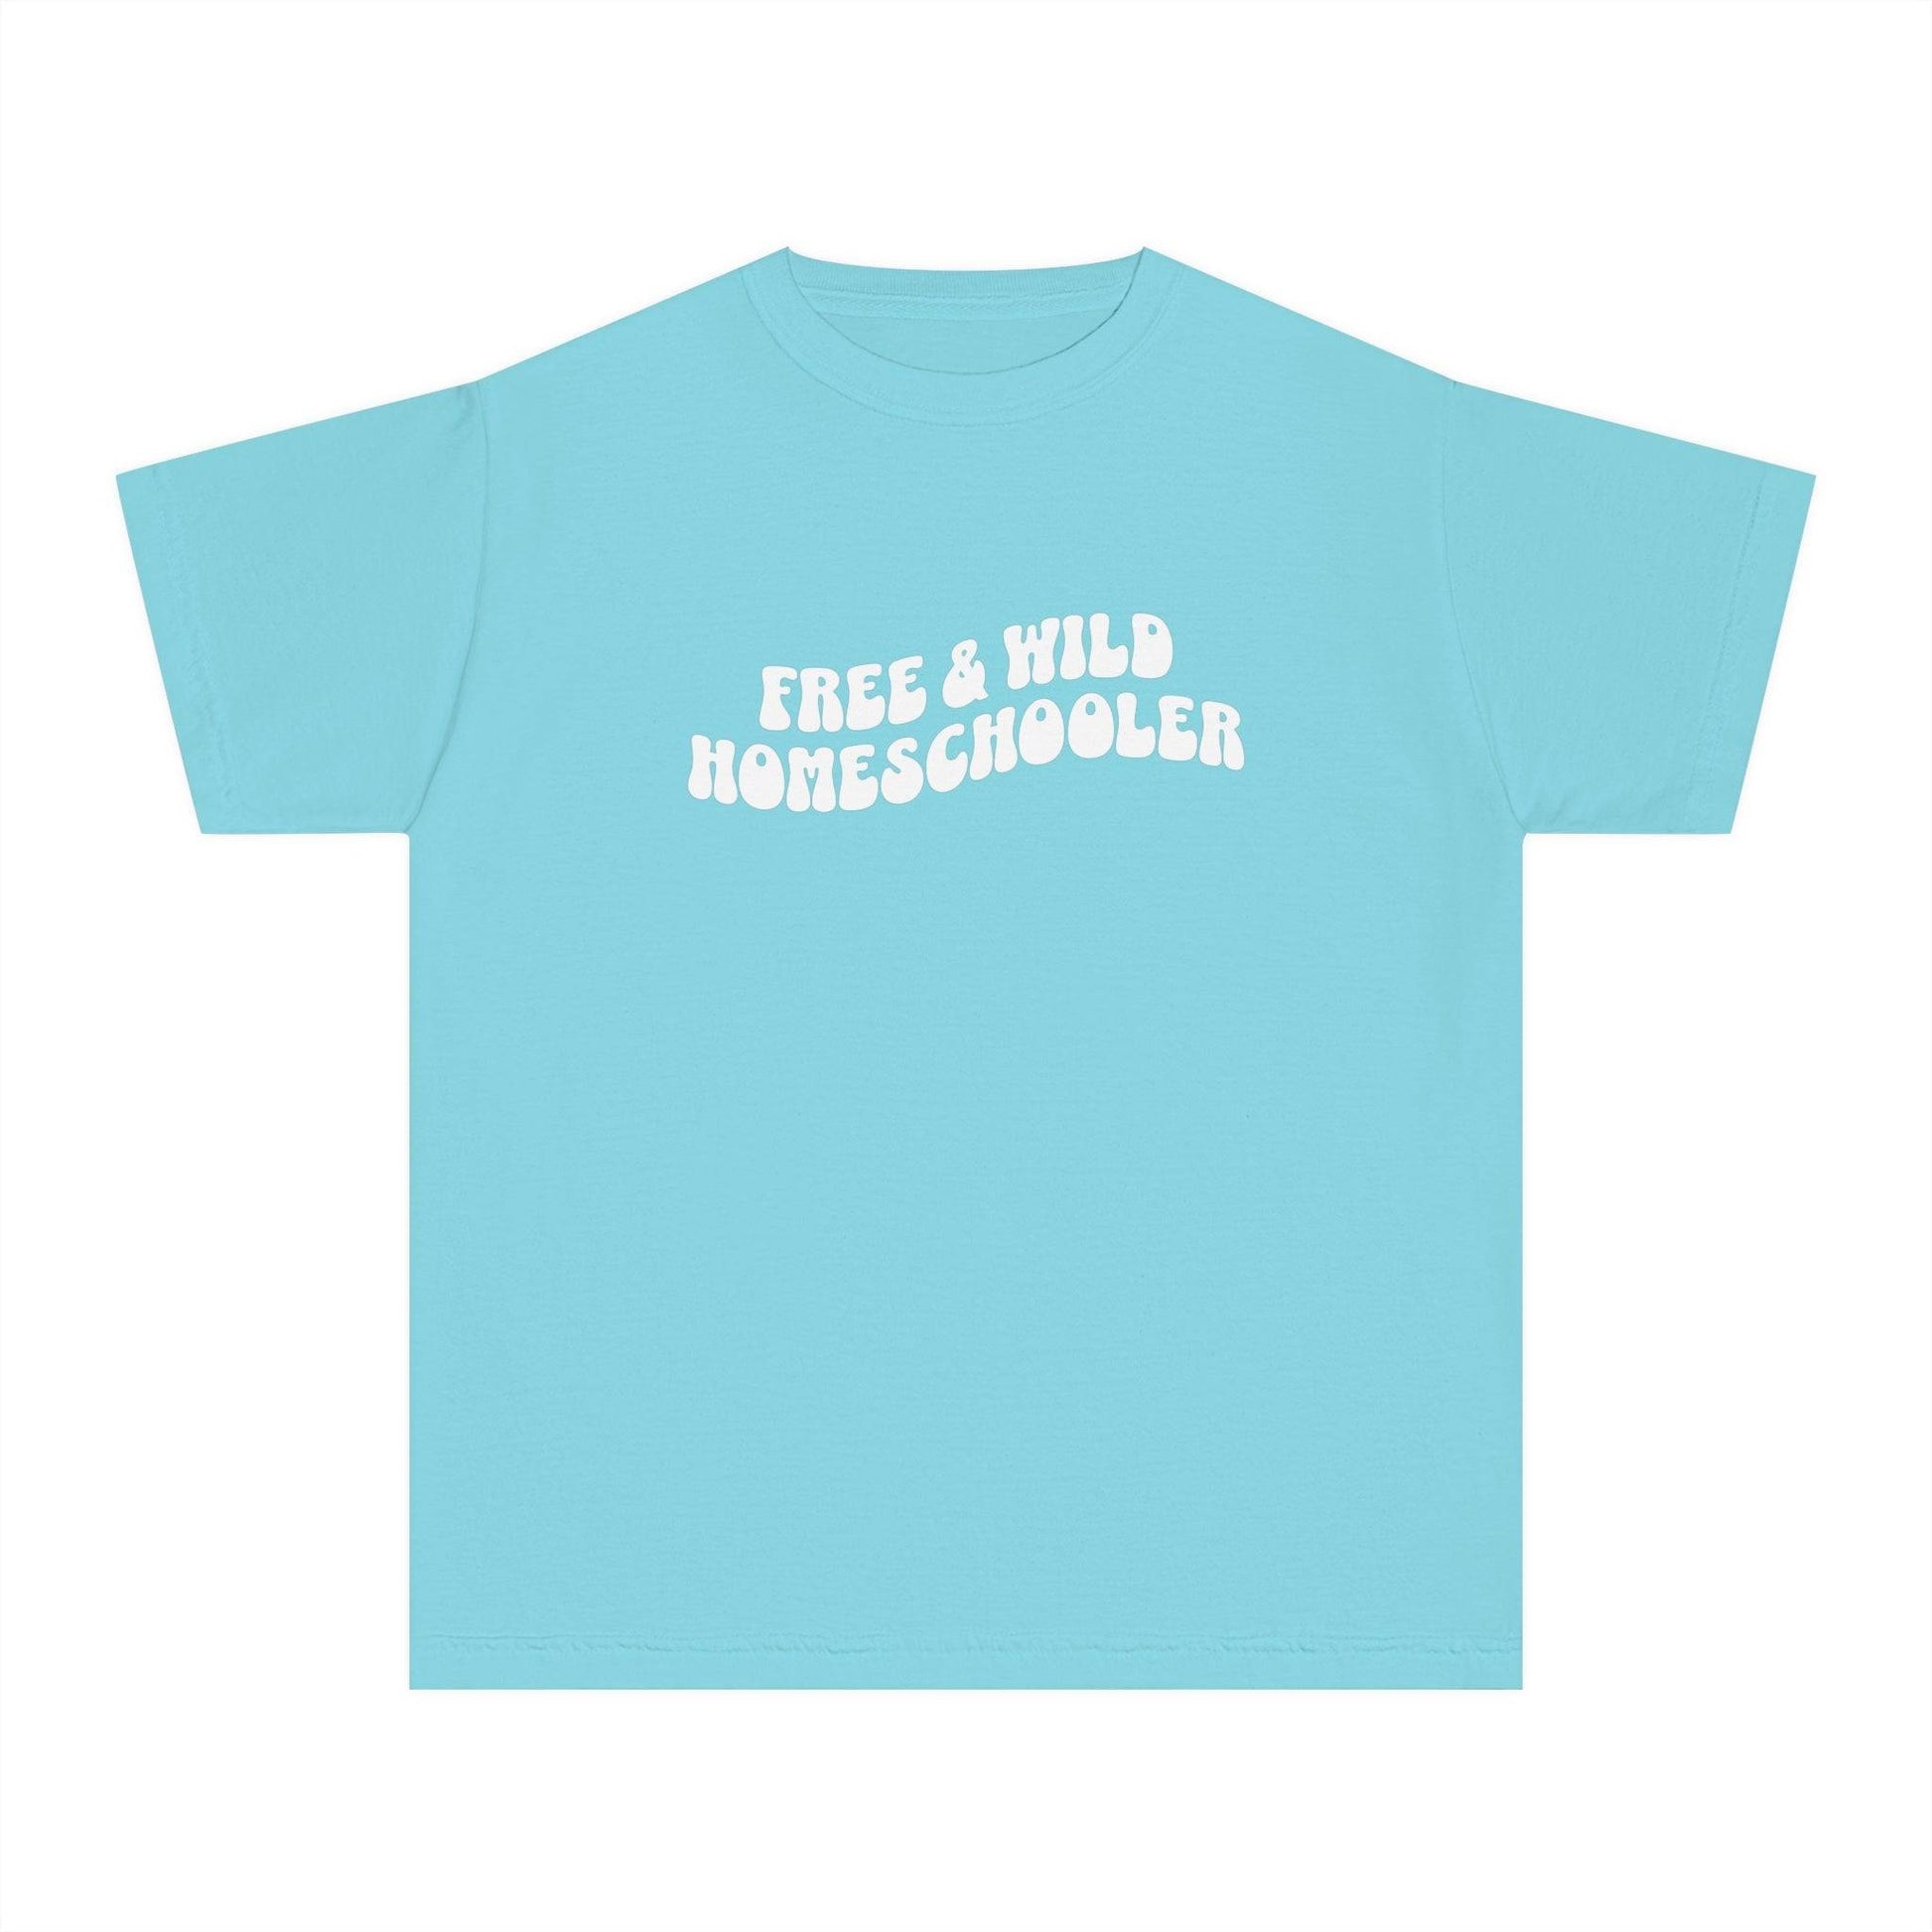 Free and Wild Homeschooler Kids Midweight Tee Shirt